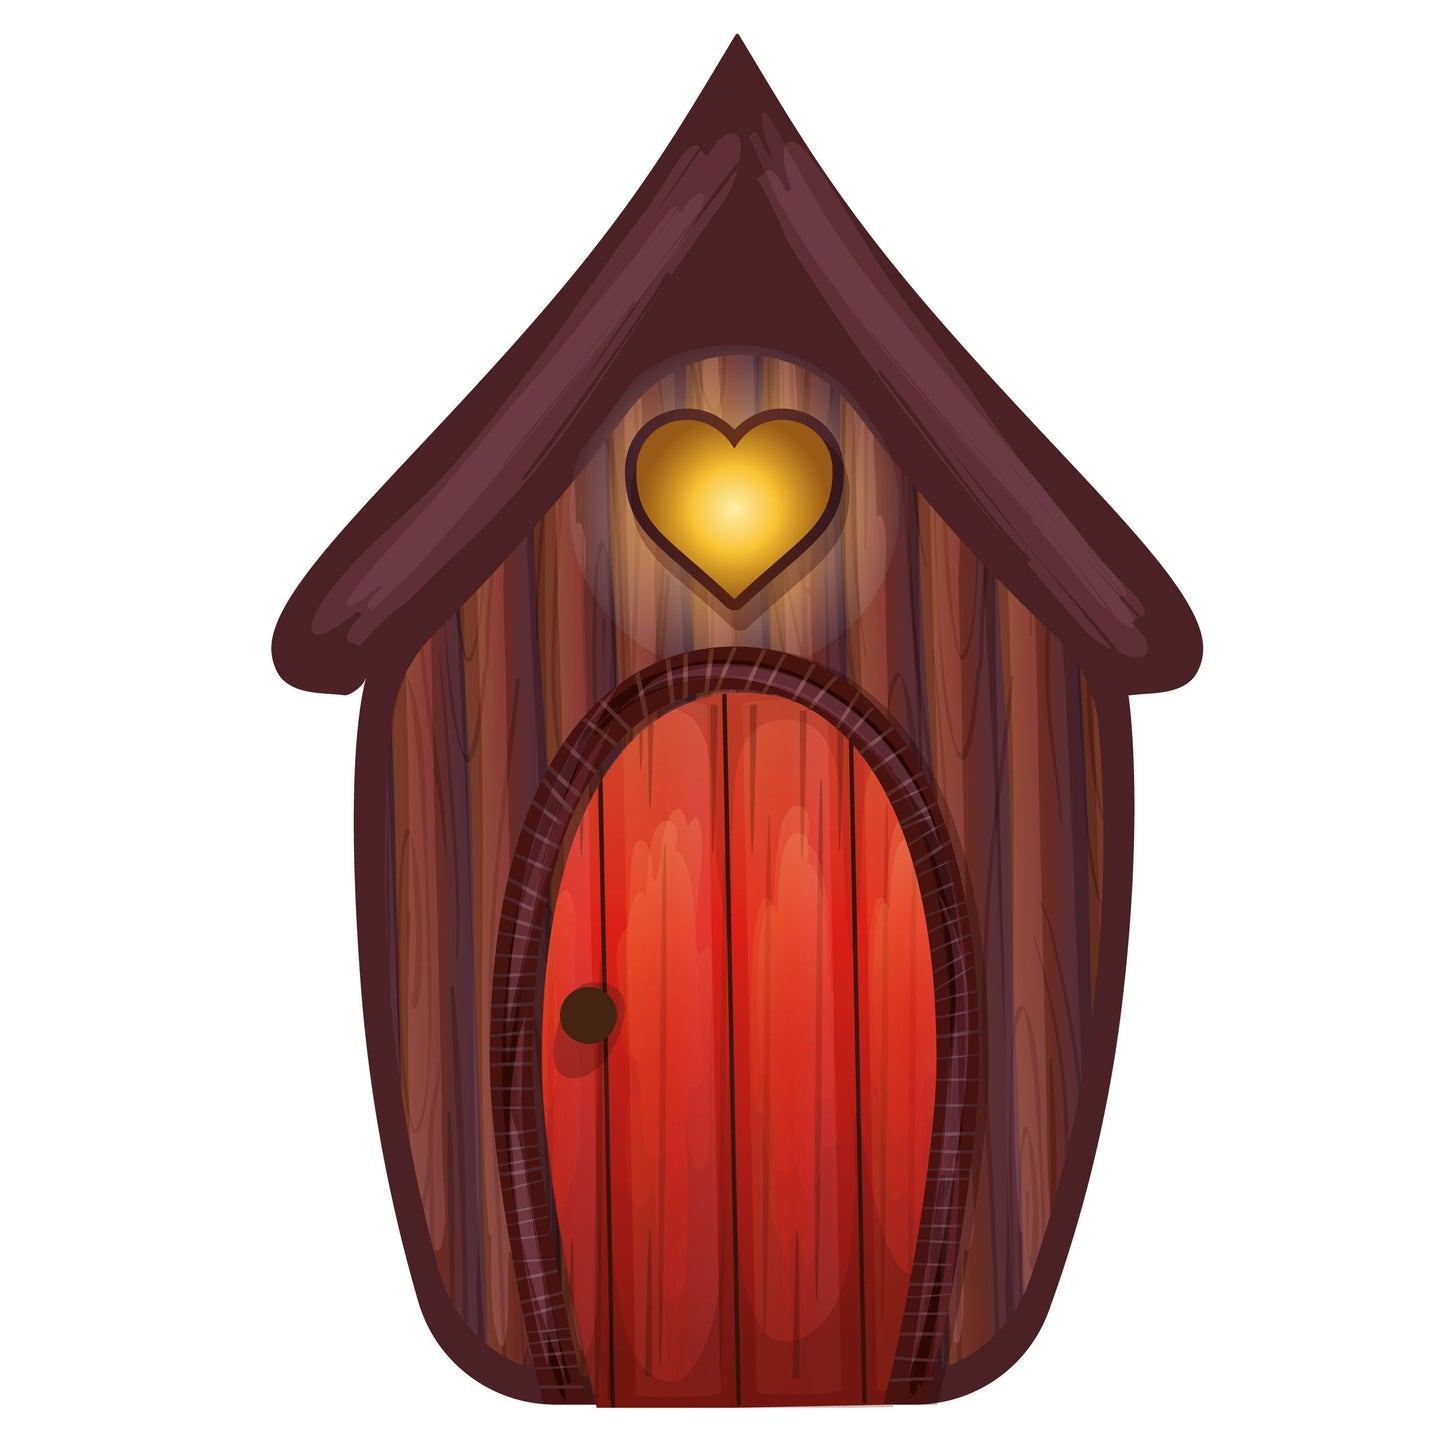 Wooden Fairytale House Cutout